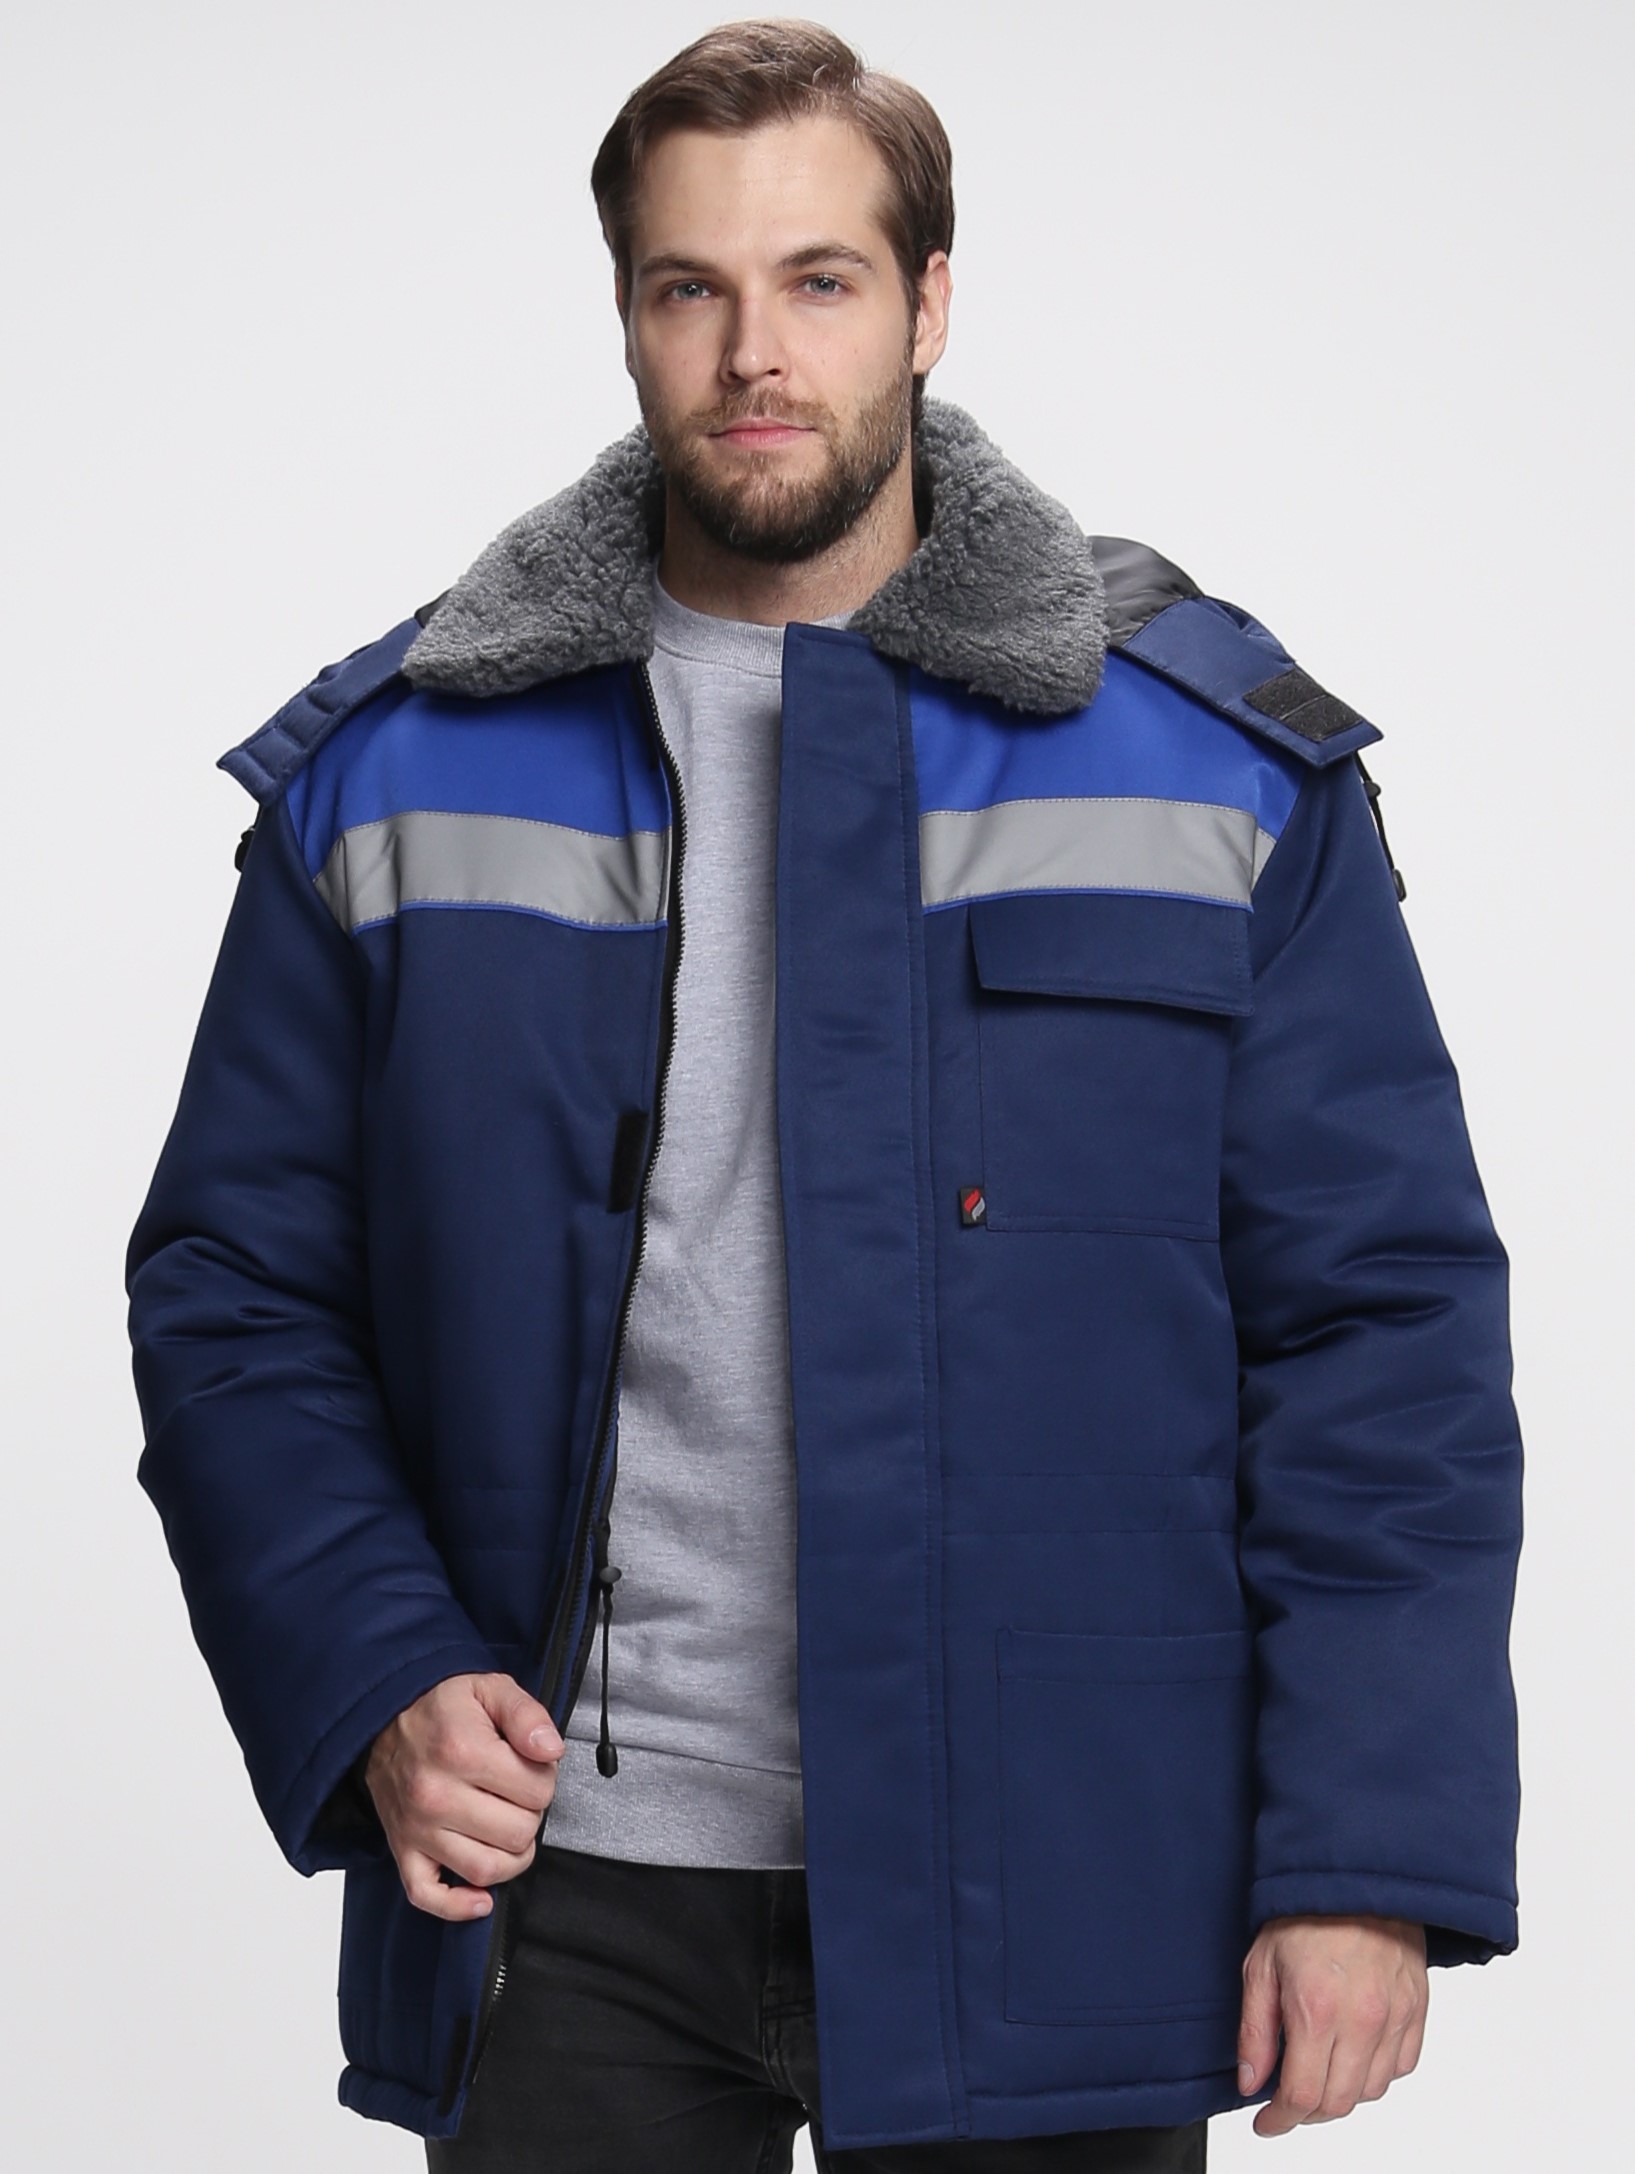 Зимняя куртка "Факел-БРИГАДА" мужская, удлиненная, цвет: синий с васильковым, ткань: смесовая